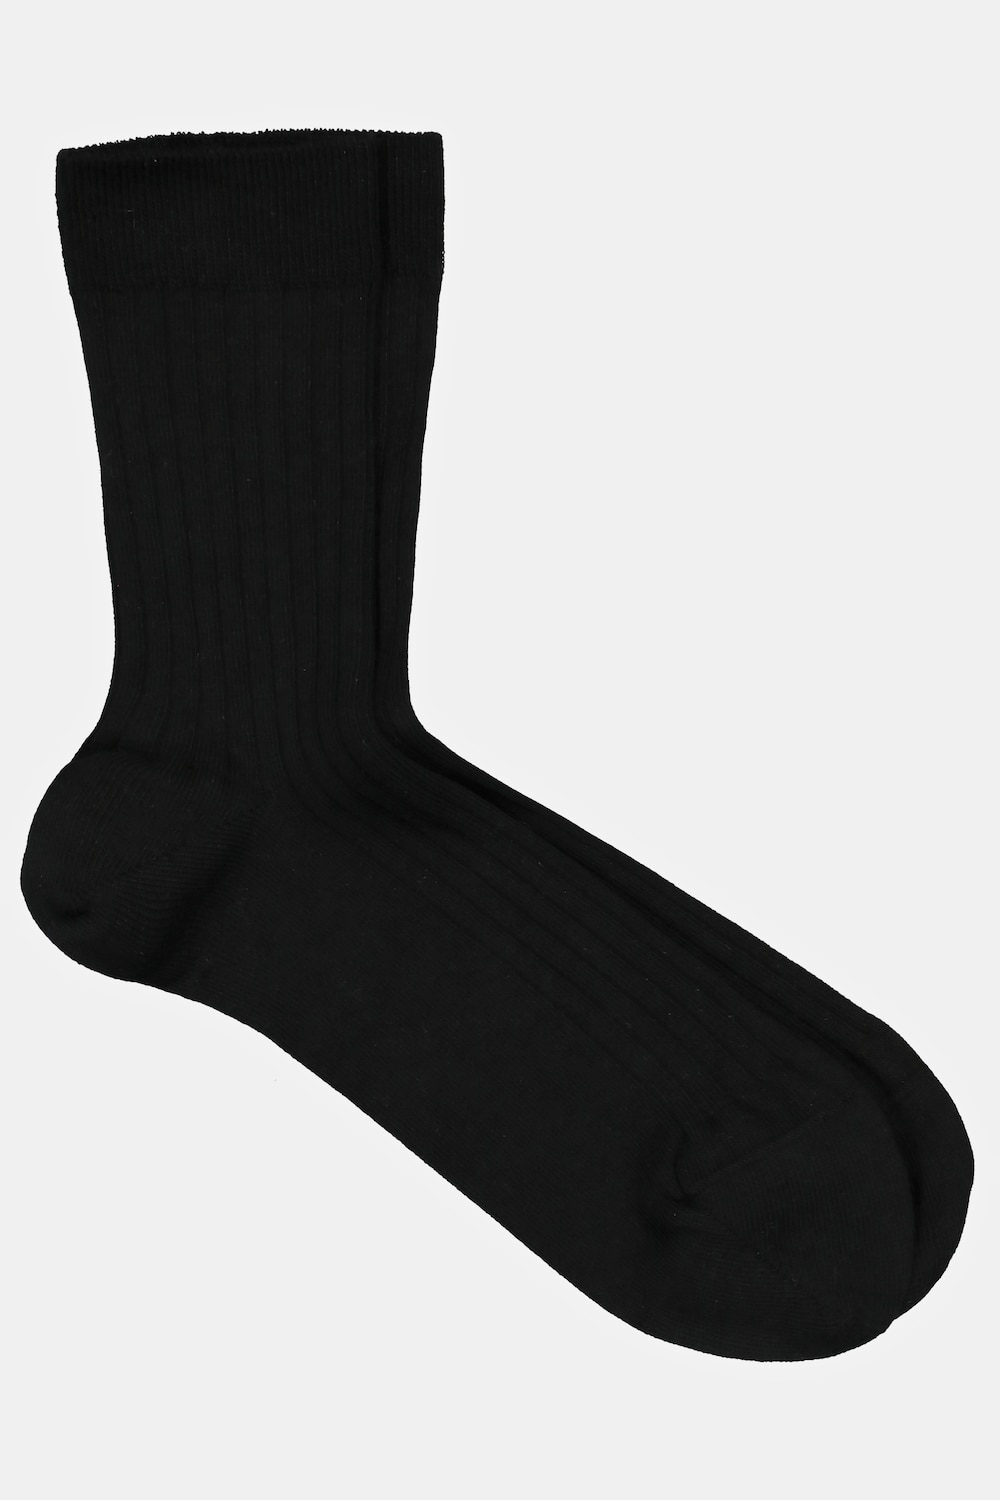 Socken, Große Größen, Herren, schwarz, Größe: 47-50, Baumwolle/Synthetische Fasern, JP1880